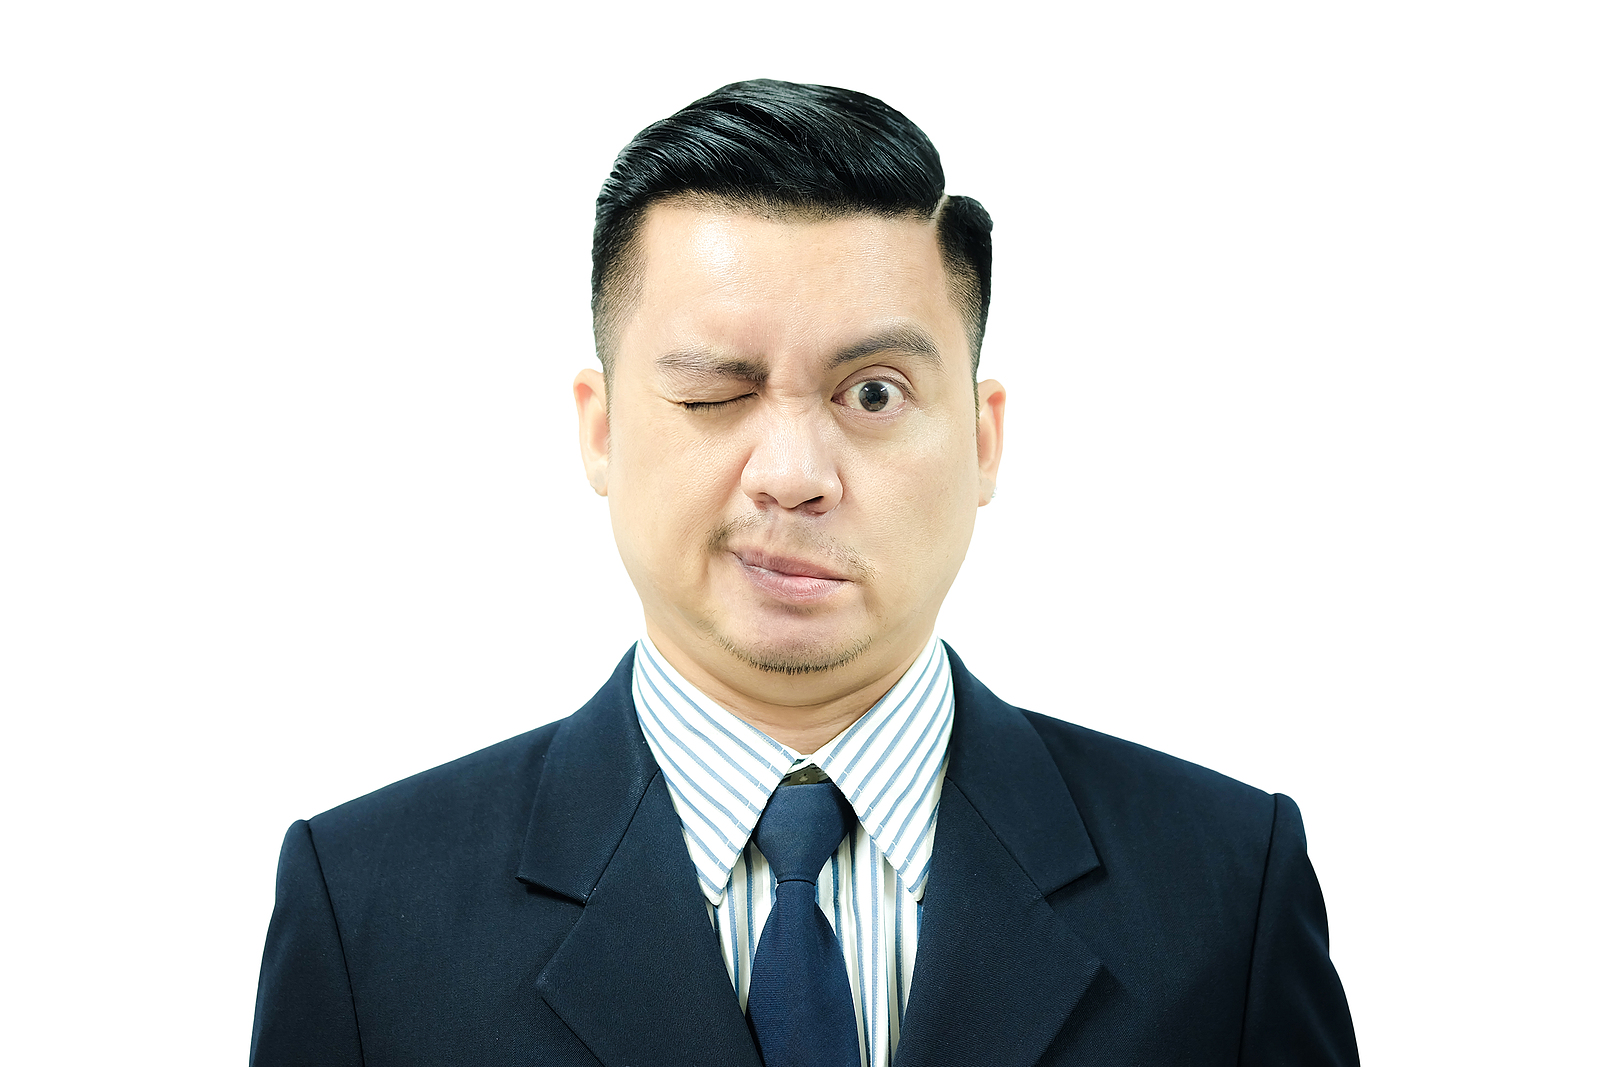 Asian Man with Facial Paralysis